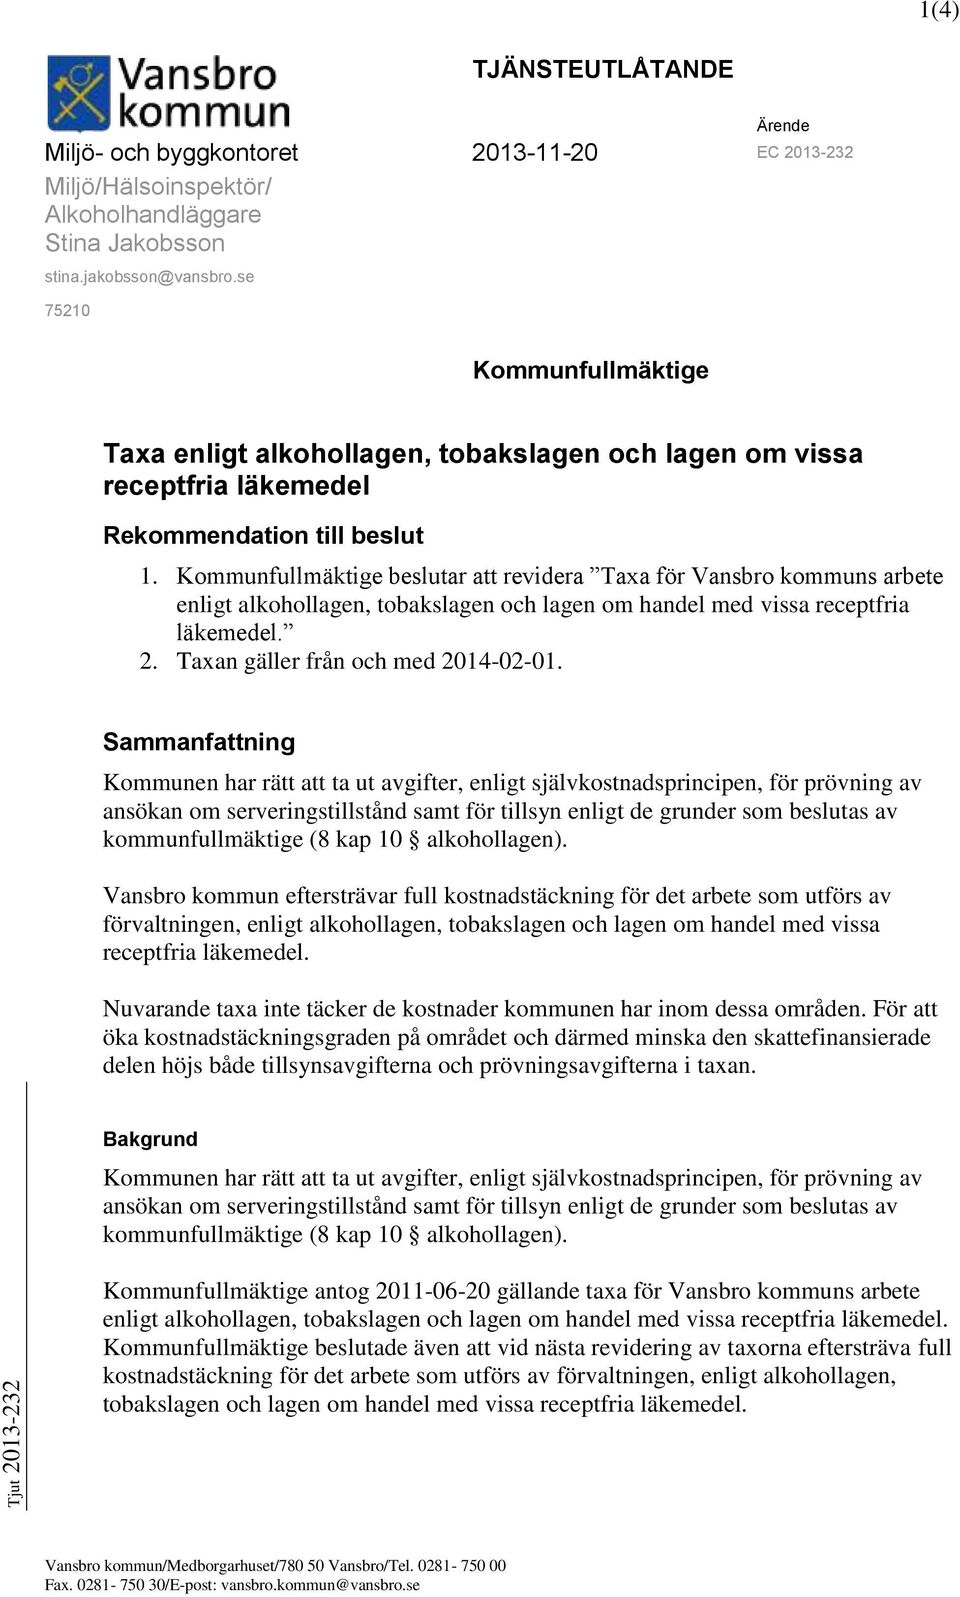 Kommunfullmäktige beslutar att revidera Taxa för Vansbro kommuns arbete enligt alkohollagen, tobakslagen och lagen om handel med vissa receptfria läkemedel. 2. Taxan gäller från och med 2014-02-01.